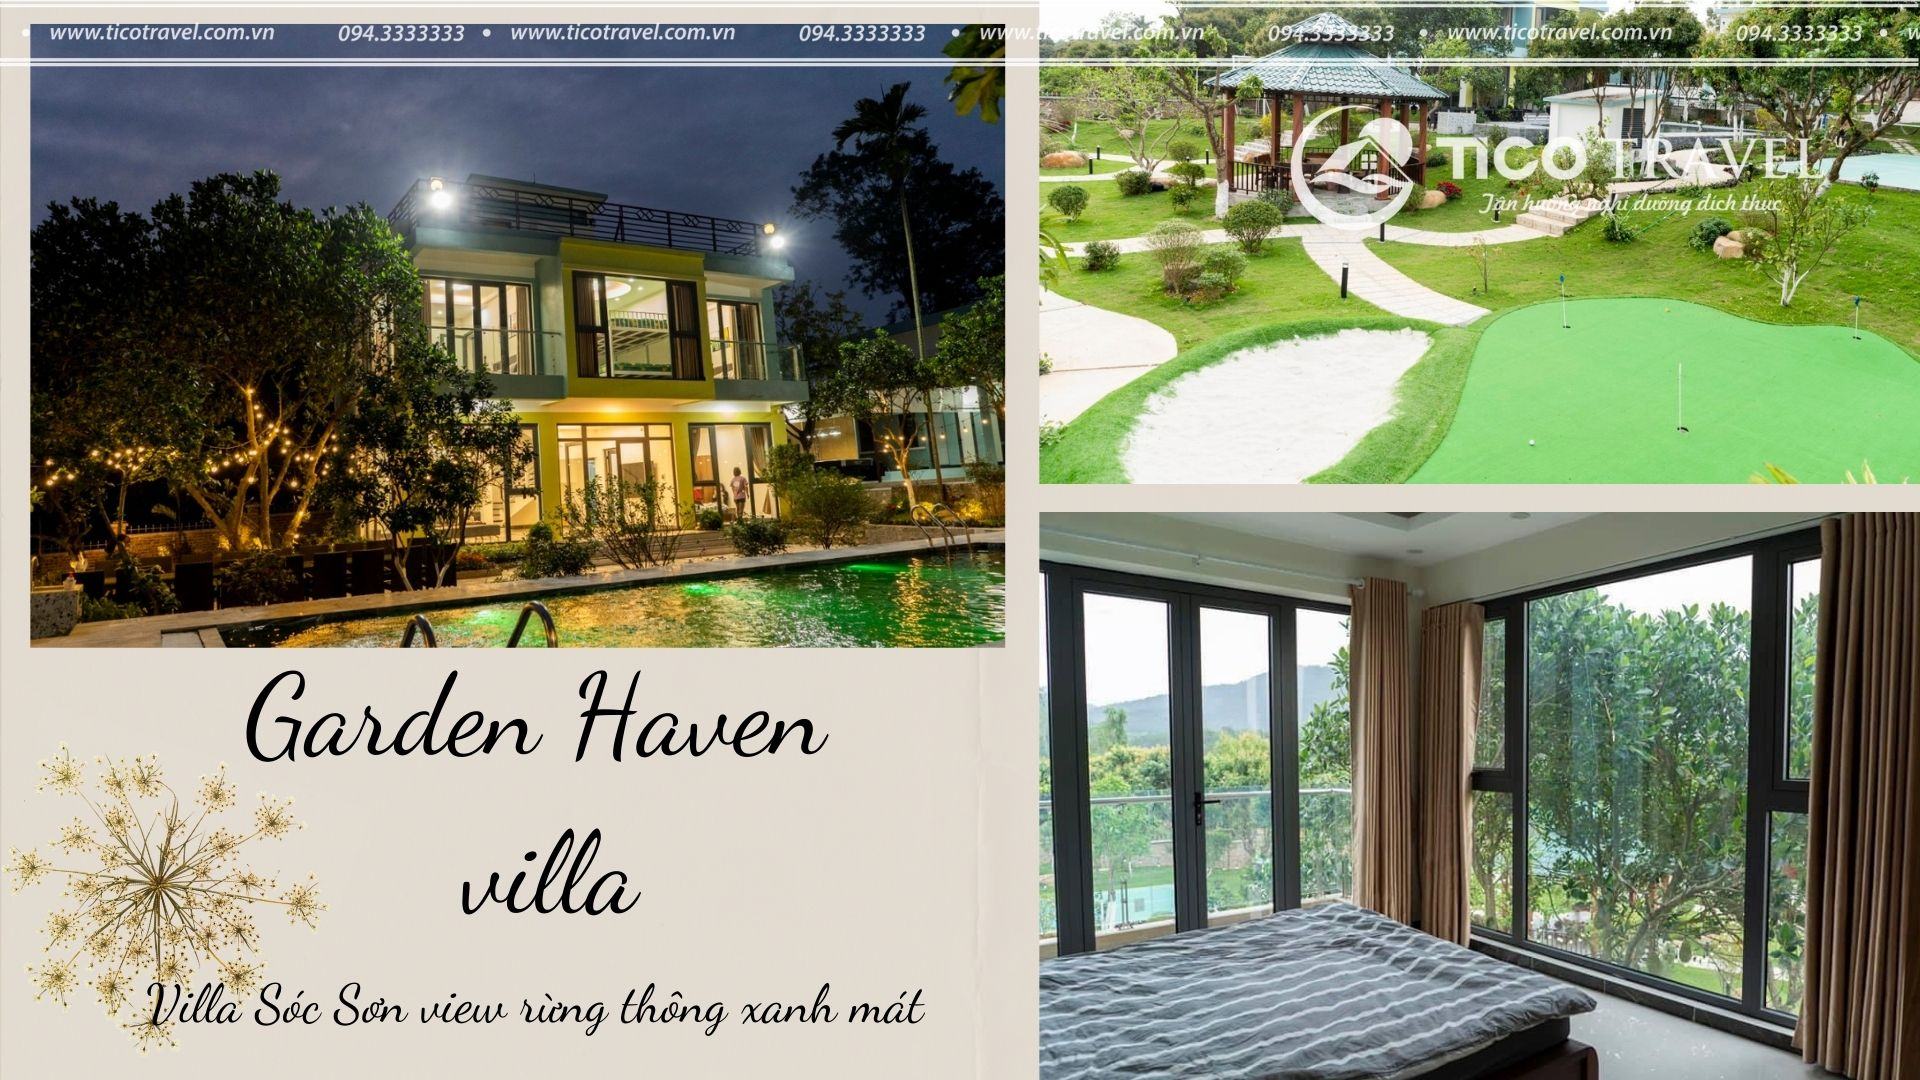 Tico 03 - Garden haven villa 